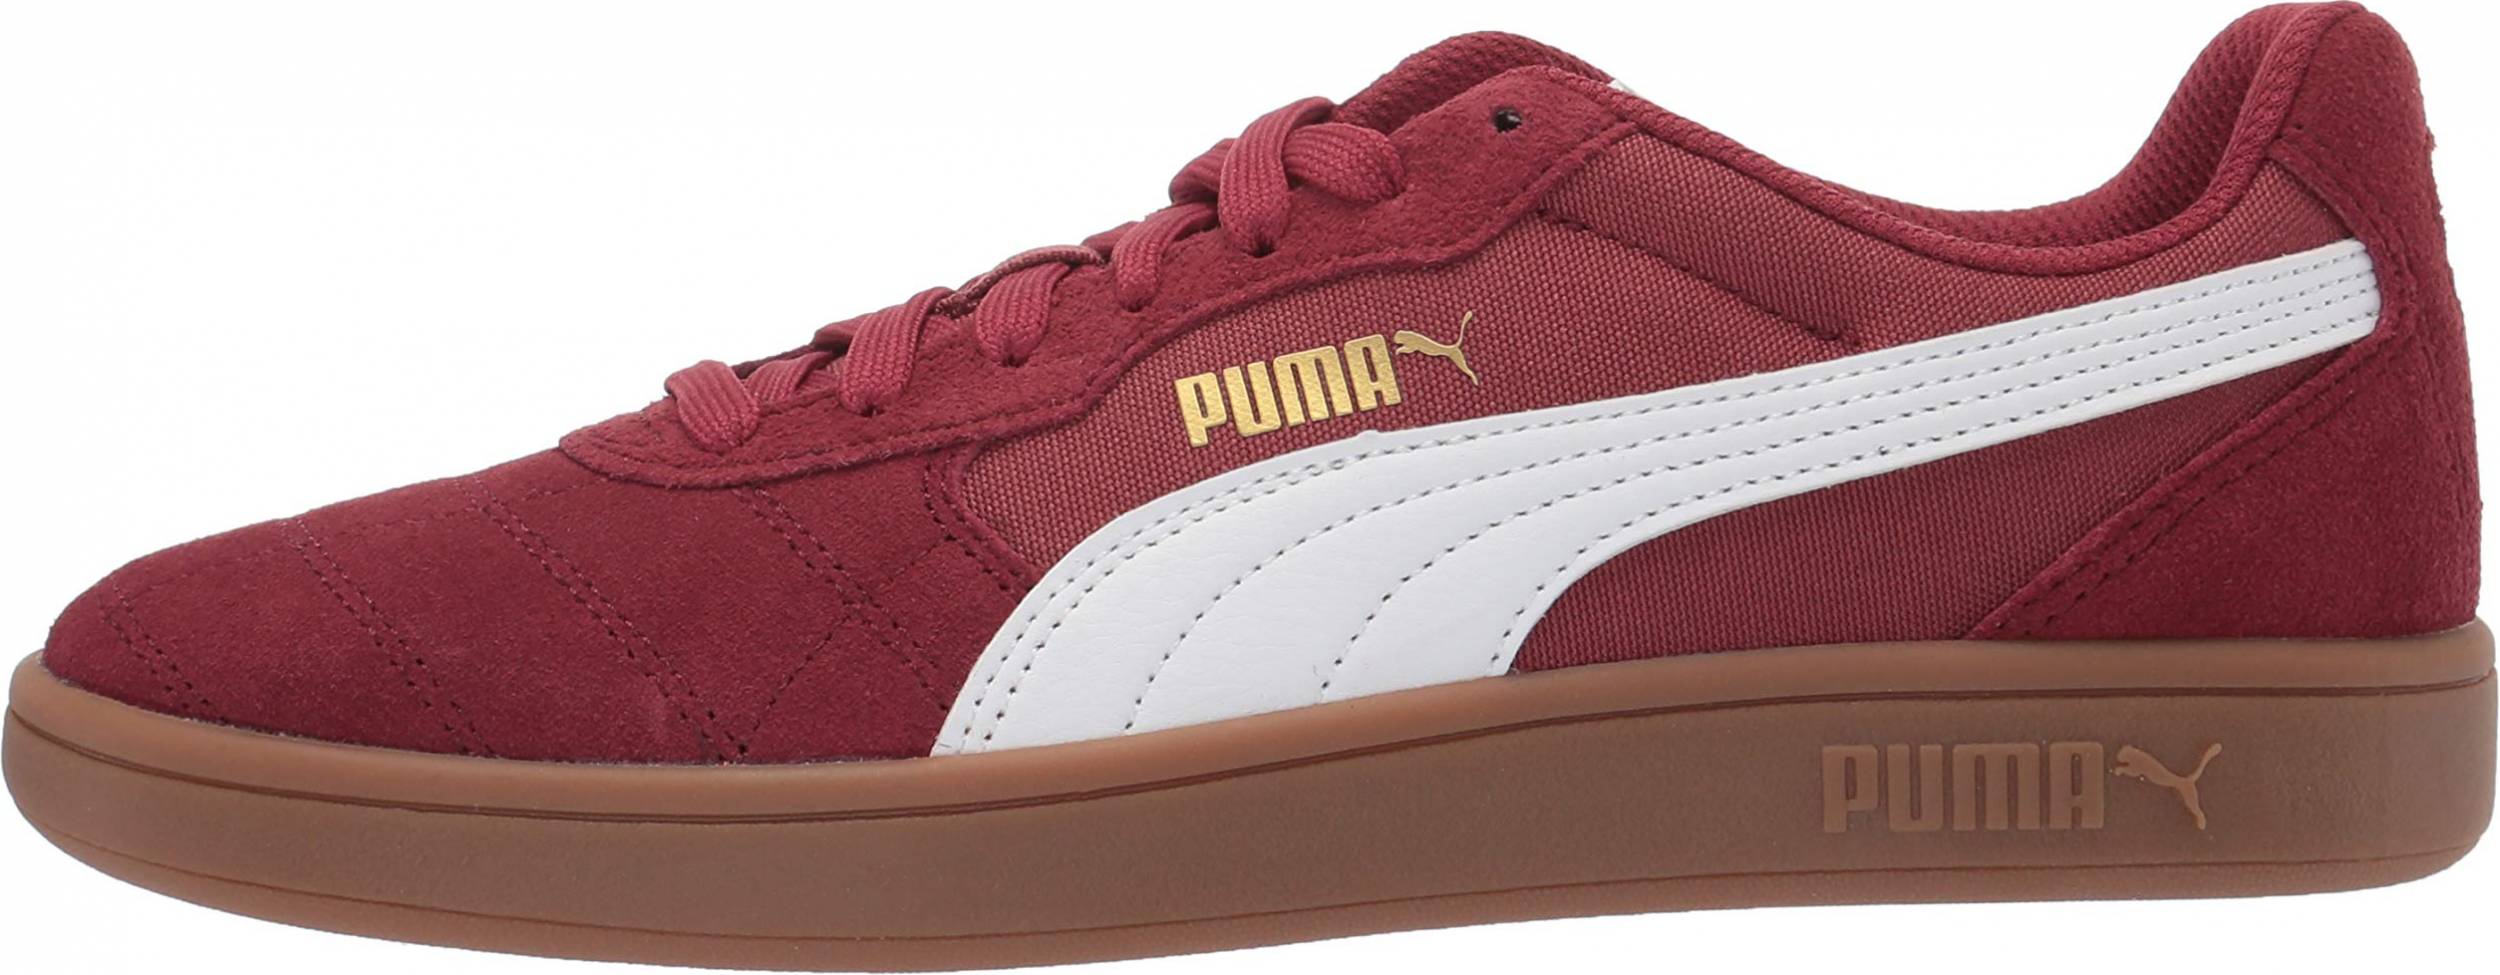 Buy > puma skate shoe > in stock